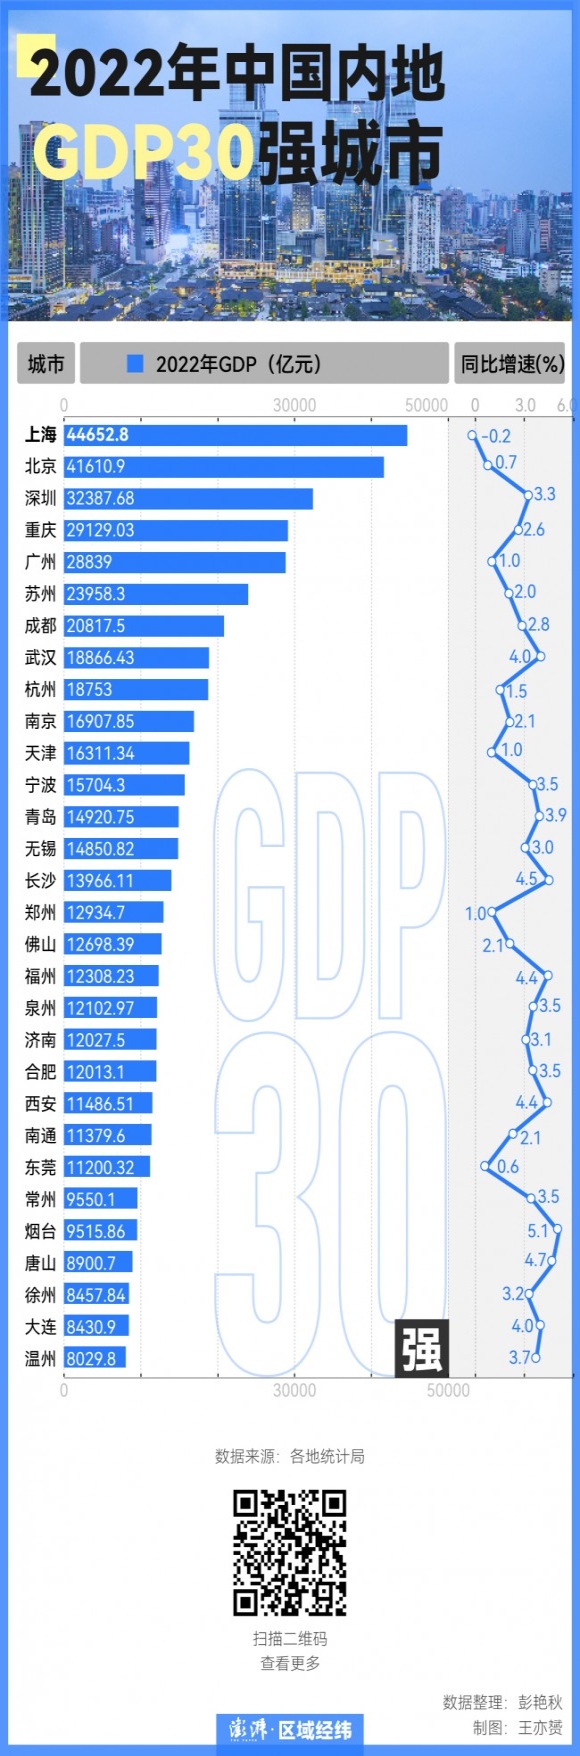 출처 : 펑파이신문(澎湃新闻), 각 지역 통계국 데이터 참고